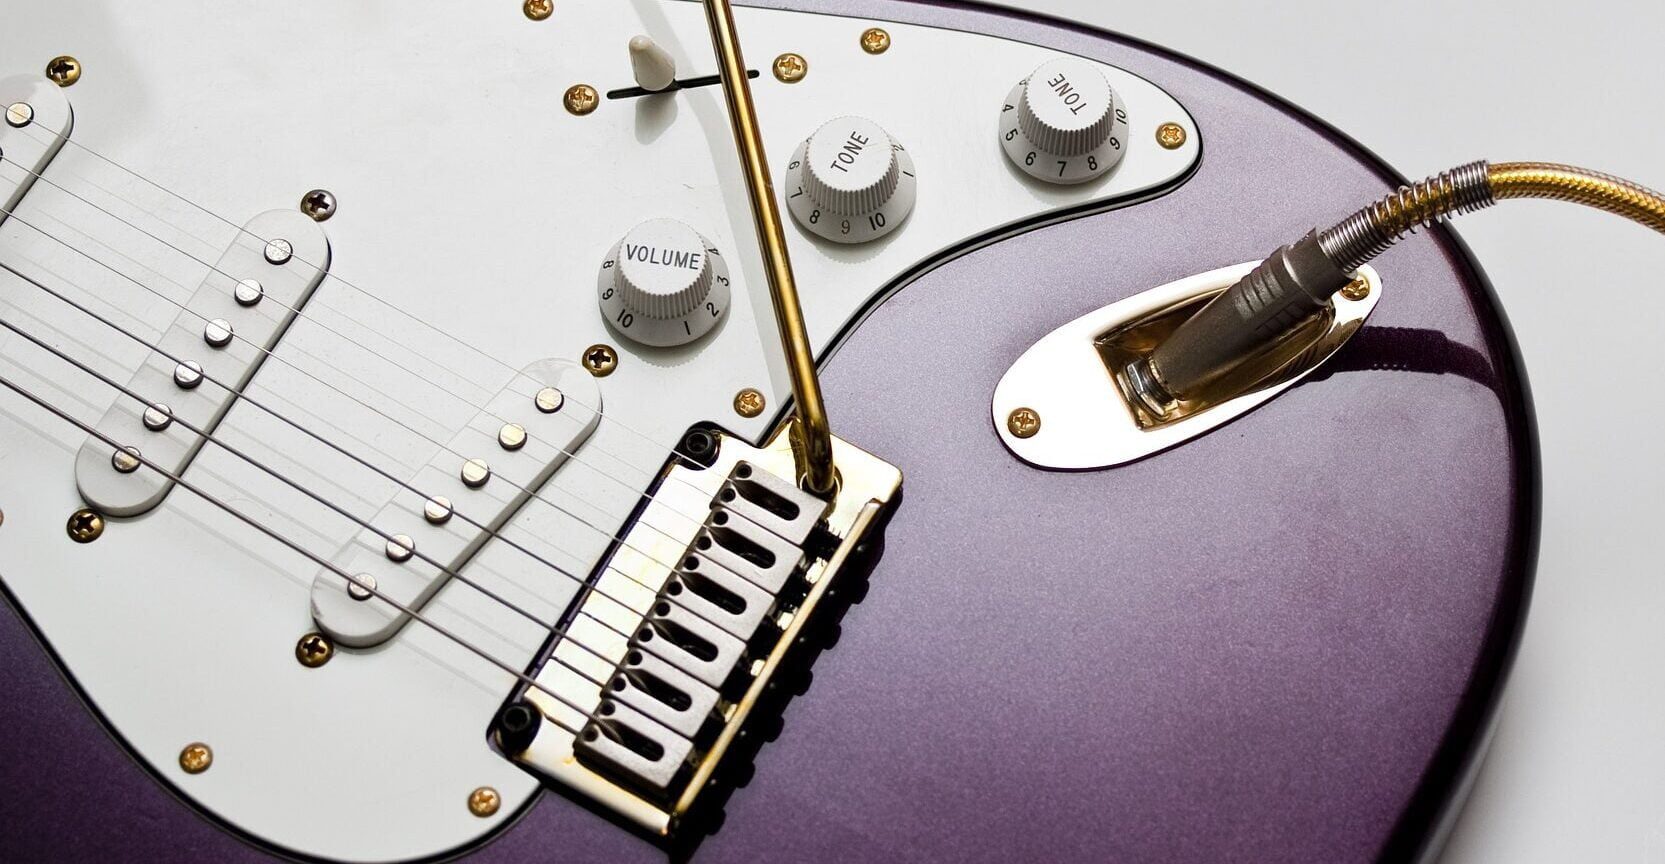 Violet and gold Fender Stratocaster